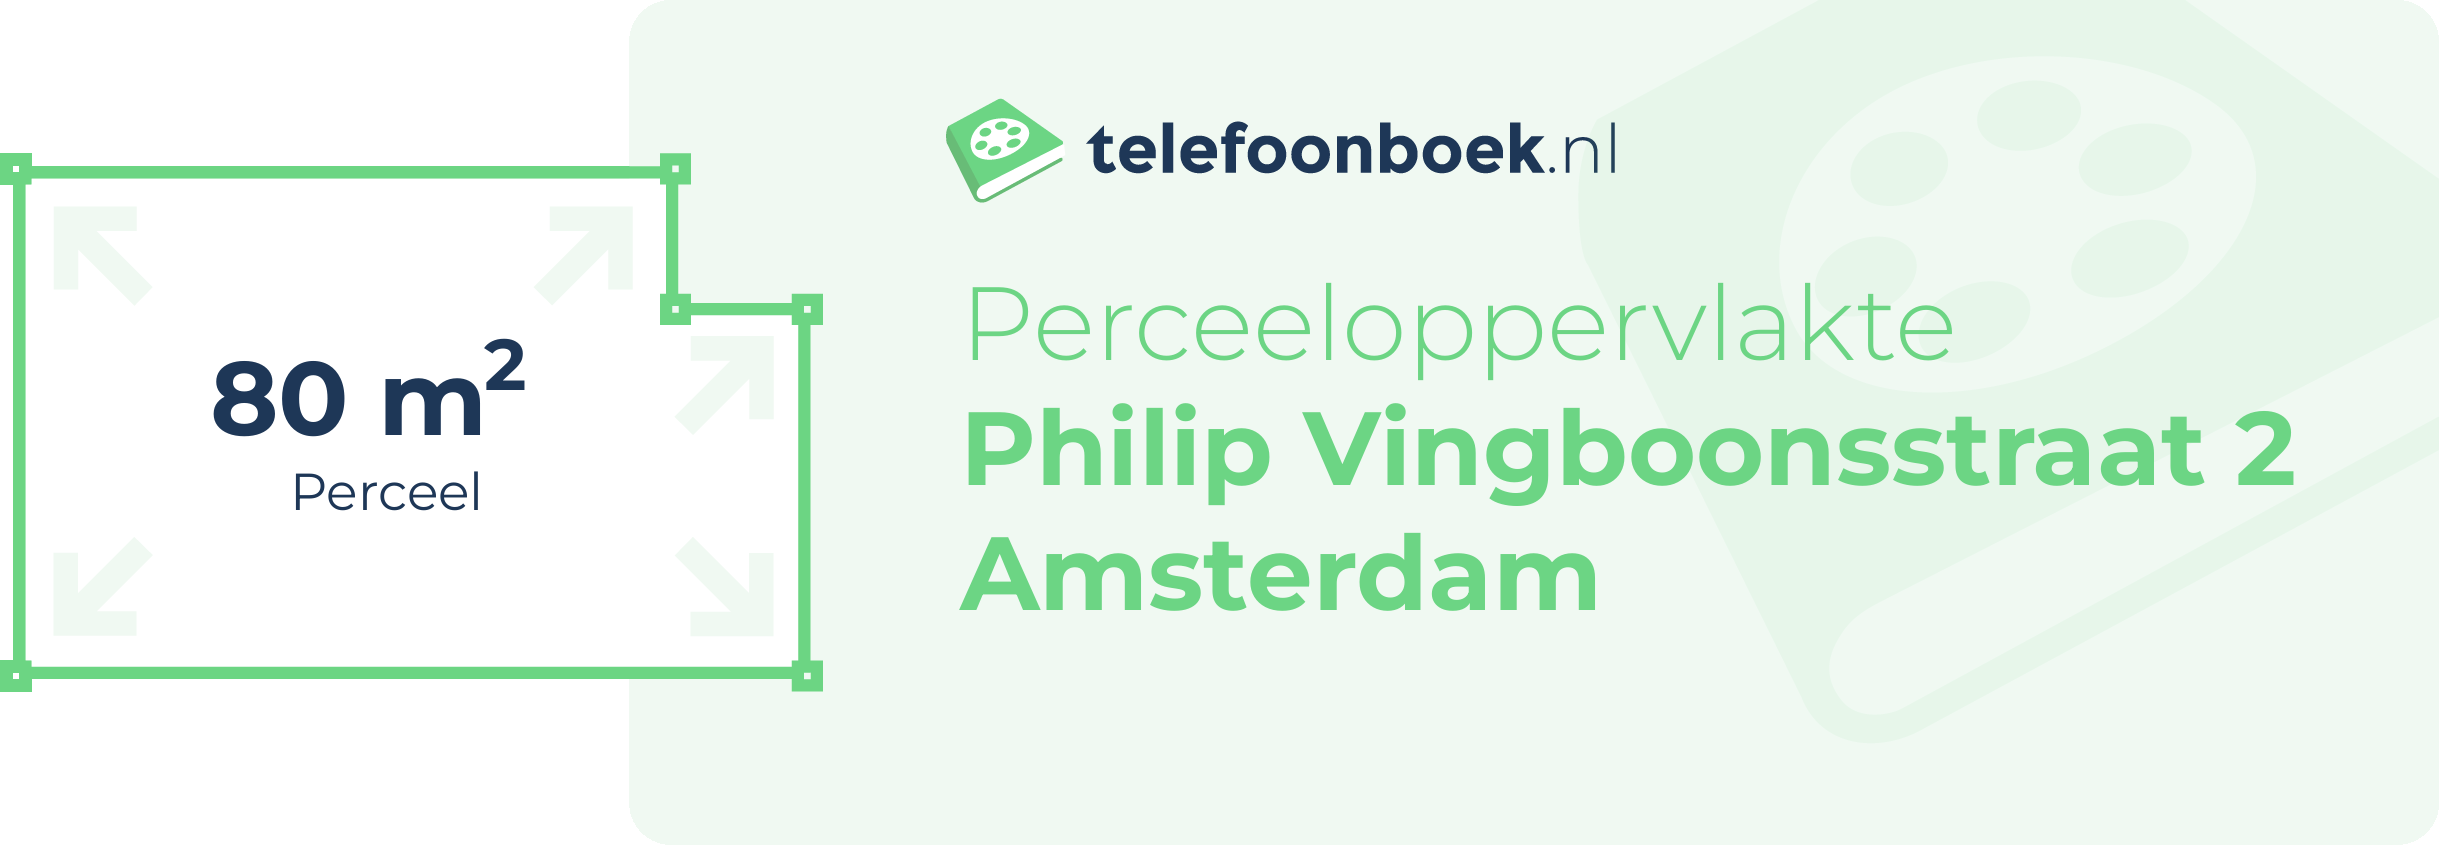 Perceeloppervlakte Philip Vingboonsstraat 2 Amsterdam